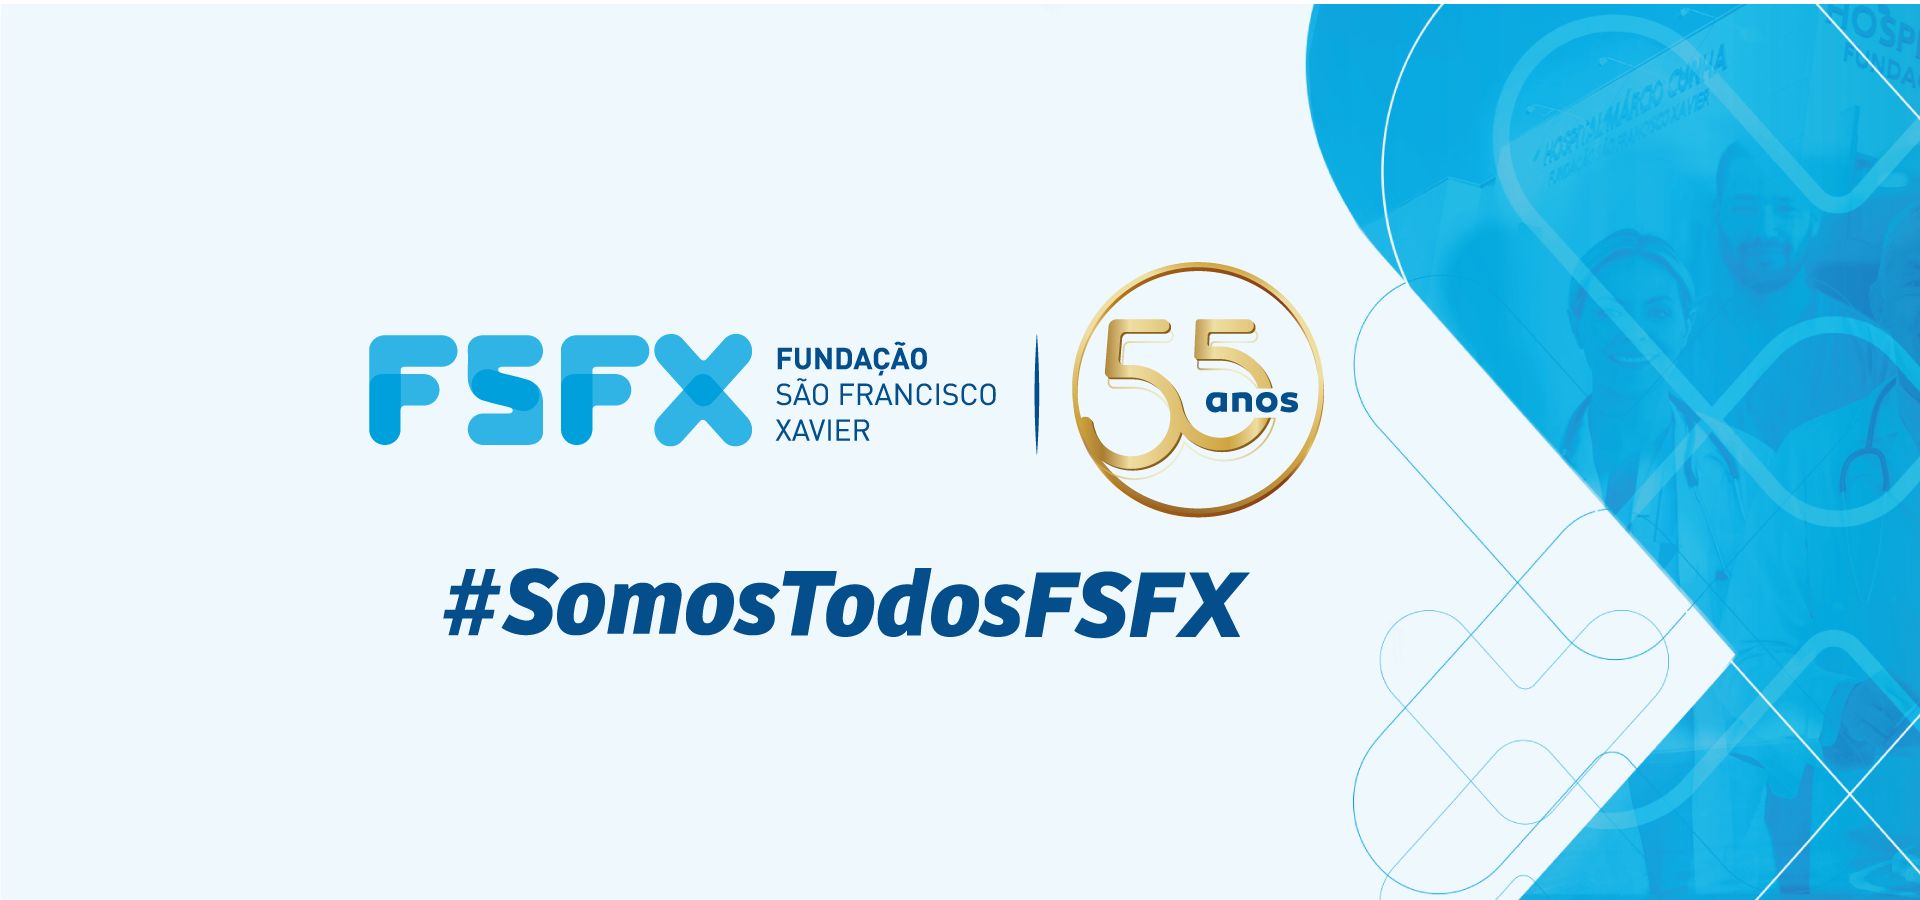 (c) Fsfx.com.br